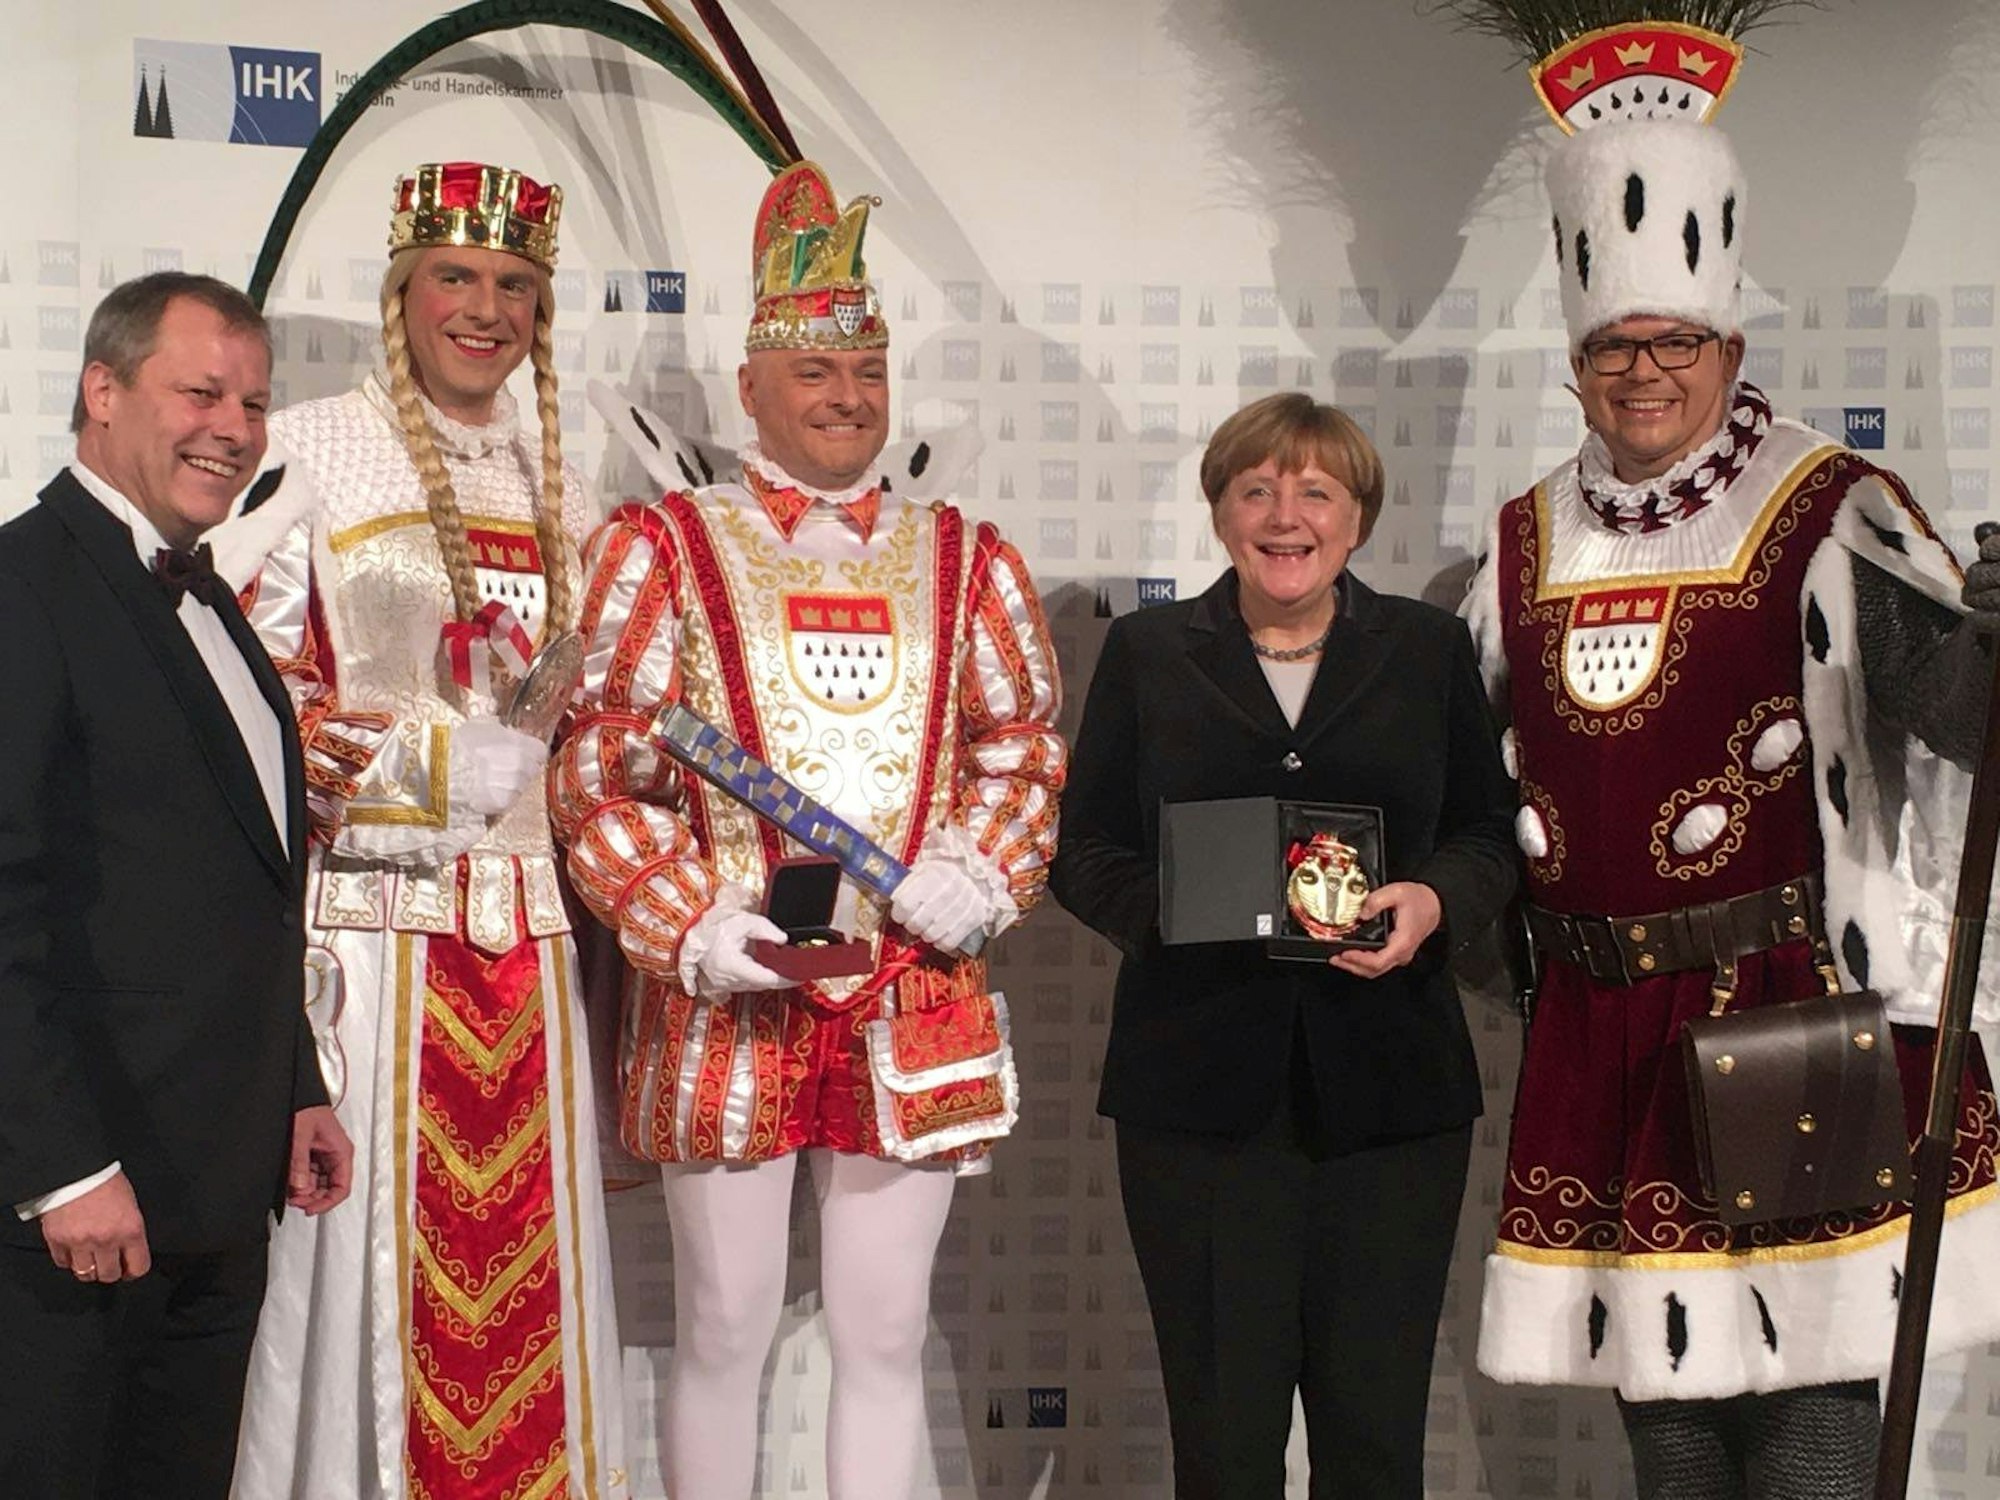 Festkommitee Dreigestirn Merkel